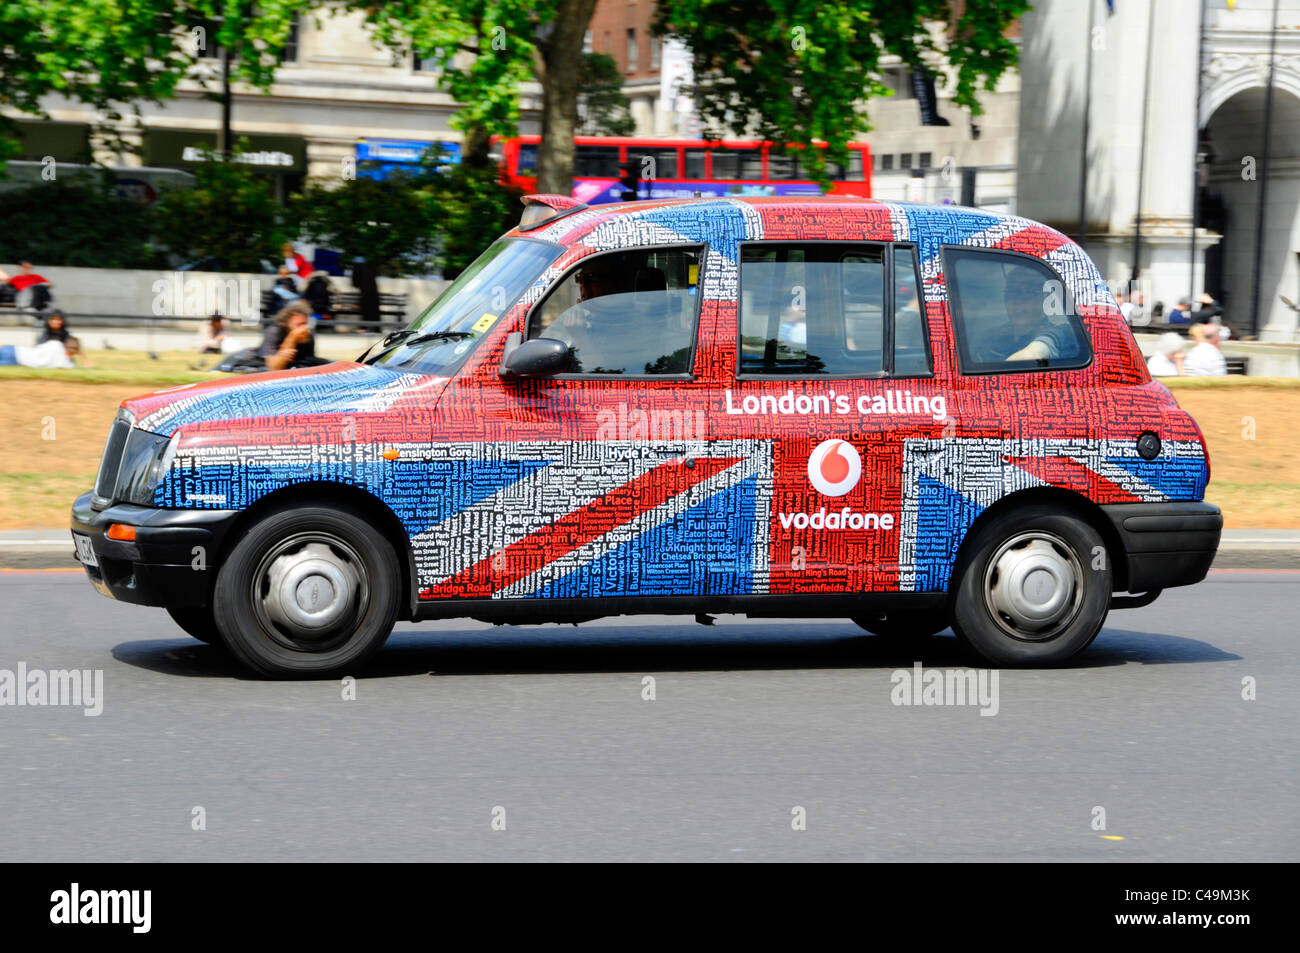 Nahaufnahme schwarz Taxi Taxi vorübergehend bedeckt ungewöhnliche Vodafone London Calling Union Jack Flagge & Text Tag Wort Wolke Werbegrafik England UK Stockfoto